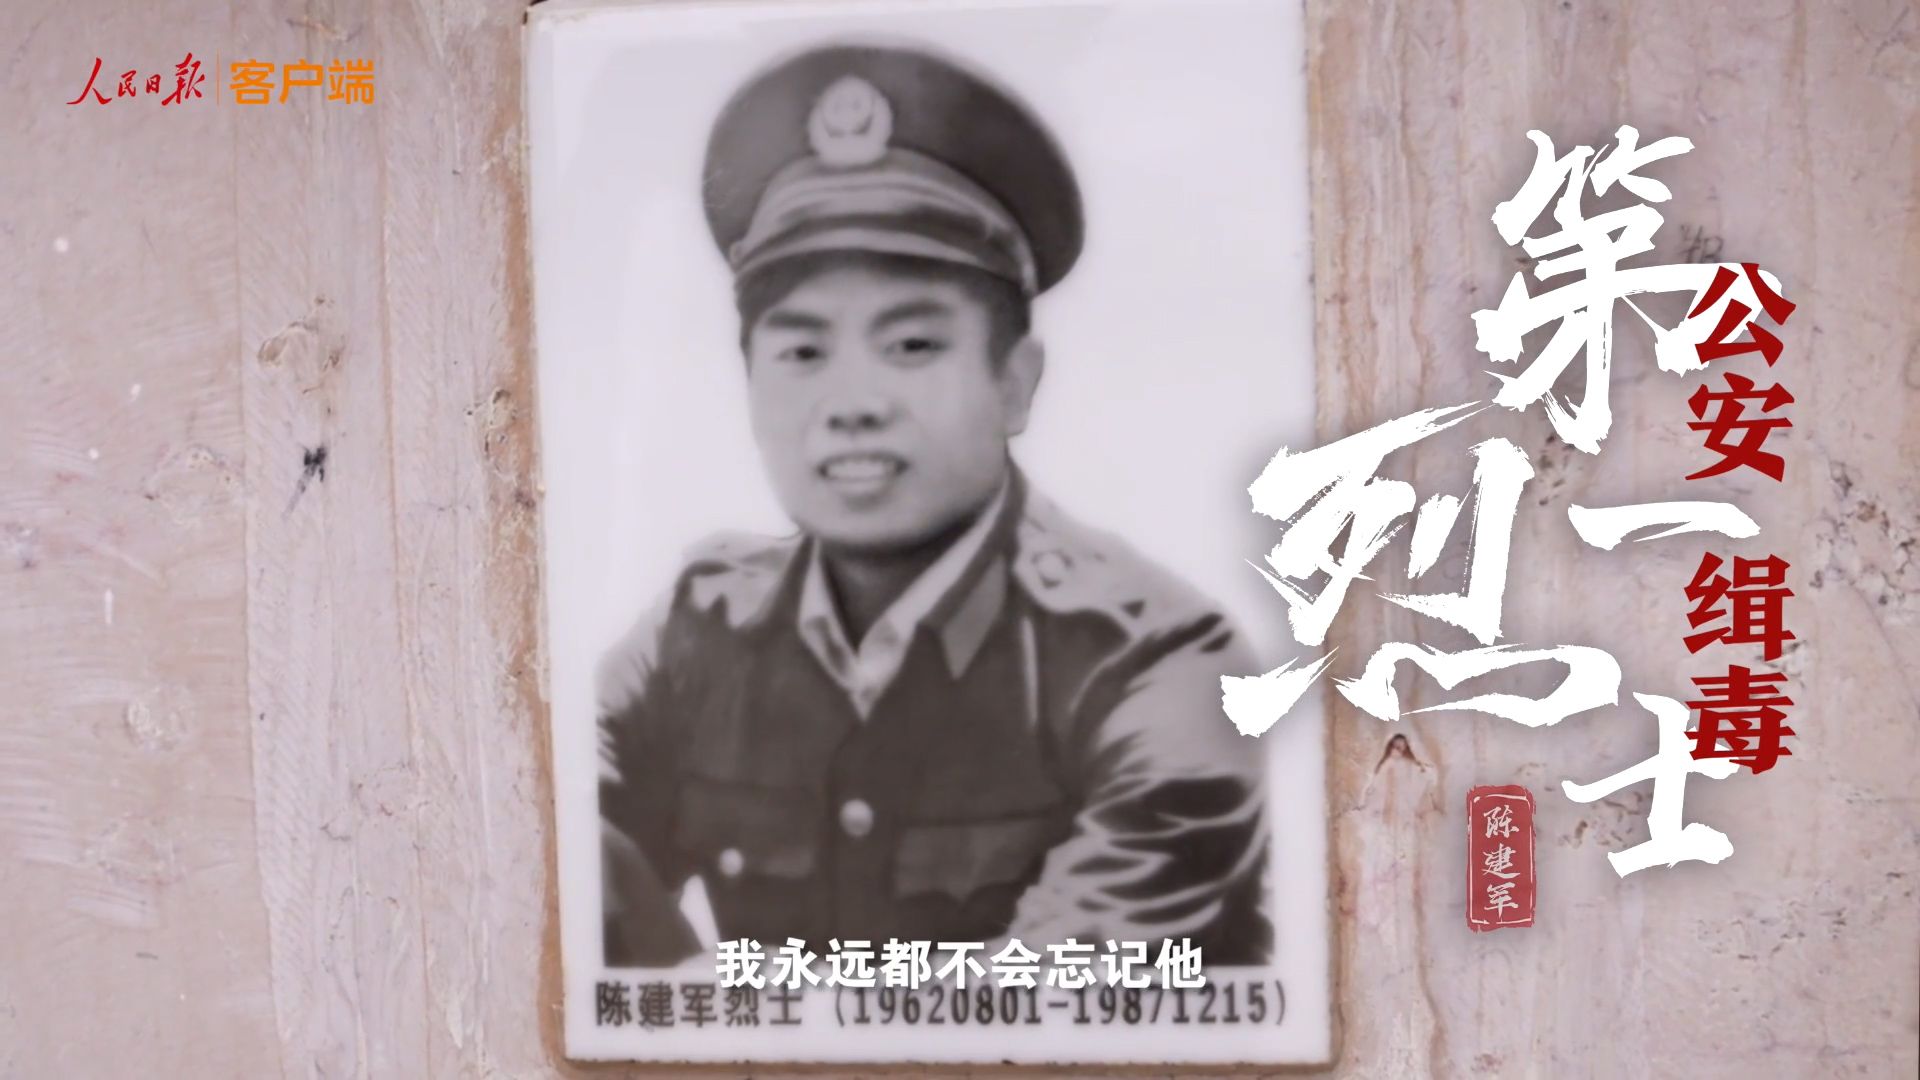 倒下时他紧扣扳机！新中国首位公安缉毒烈士牺牲过程首次详尽披露